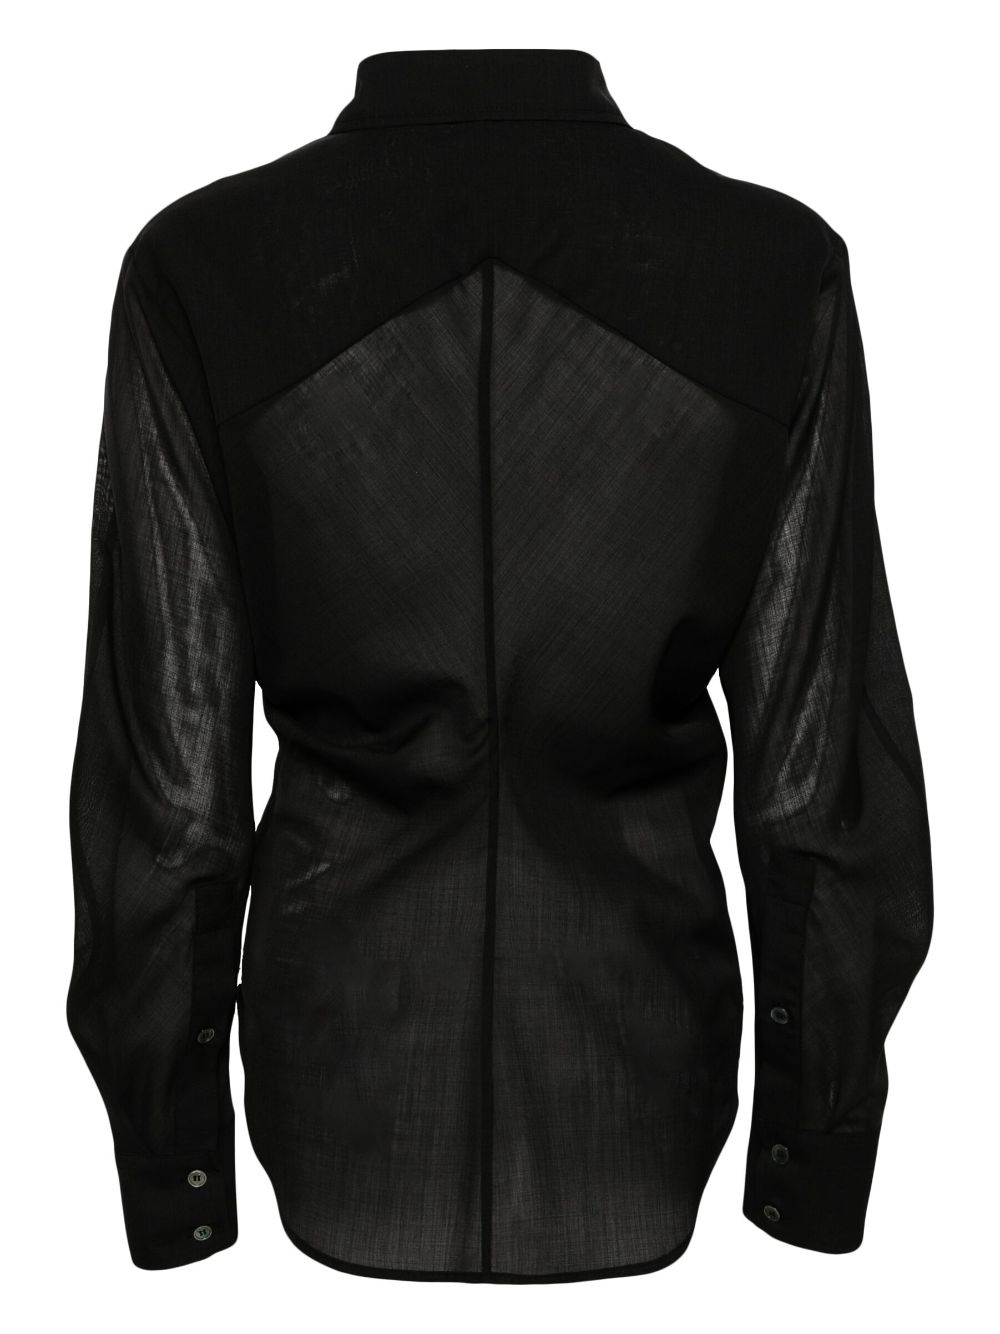 LVIR Semi-doorzichtige blouse van wolblend - Zwart